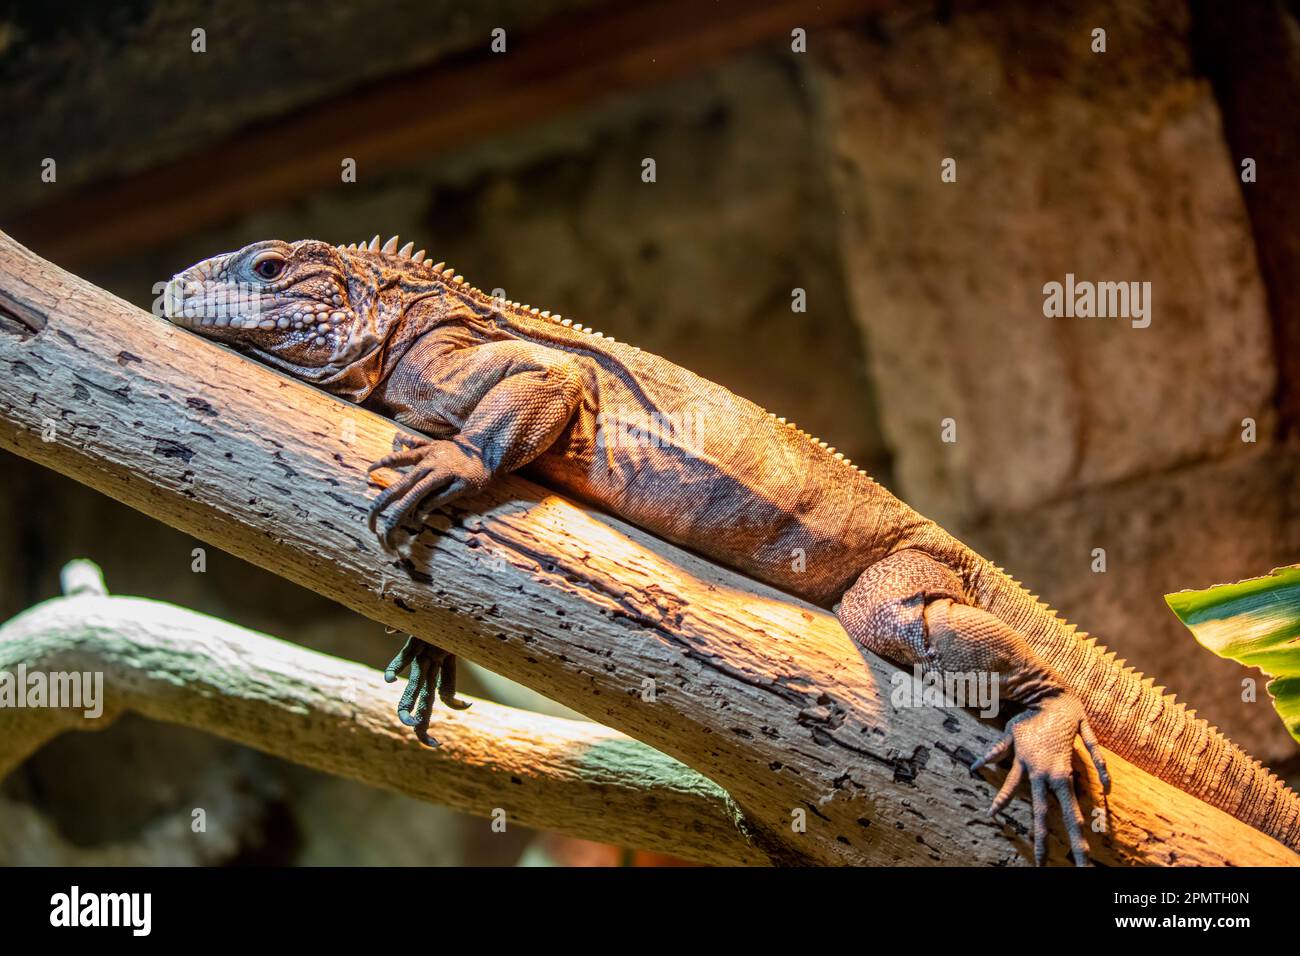 La iguana de roca cubana (Cyclura nubila) es uno de los grupos de lagartos más amenazados. Una especie herbívora con una cola gruesa y papadas con pinchos. Foto de stock